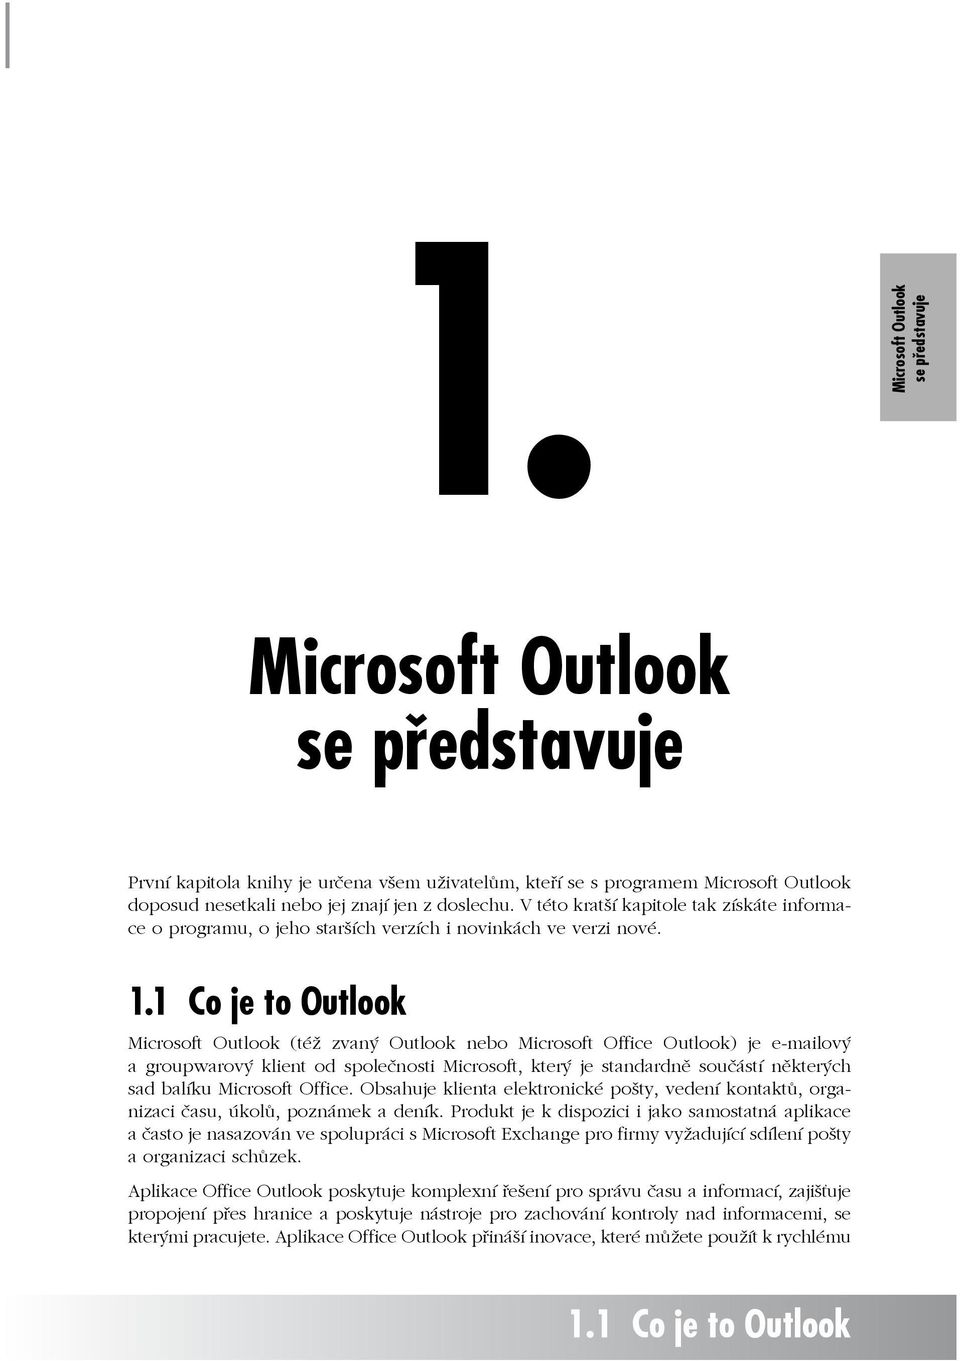 1 Co je to Outlook Microsoft Outlook (též zvaný Outlook nebo Microsoft Office Outlook) je e-mailový a groupwarový klient od společnosti Microsoft, který je standardně součástí některých sad balíku